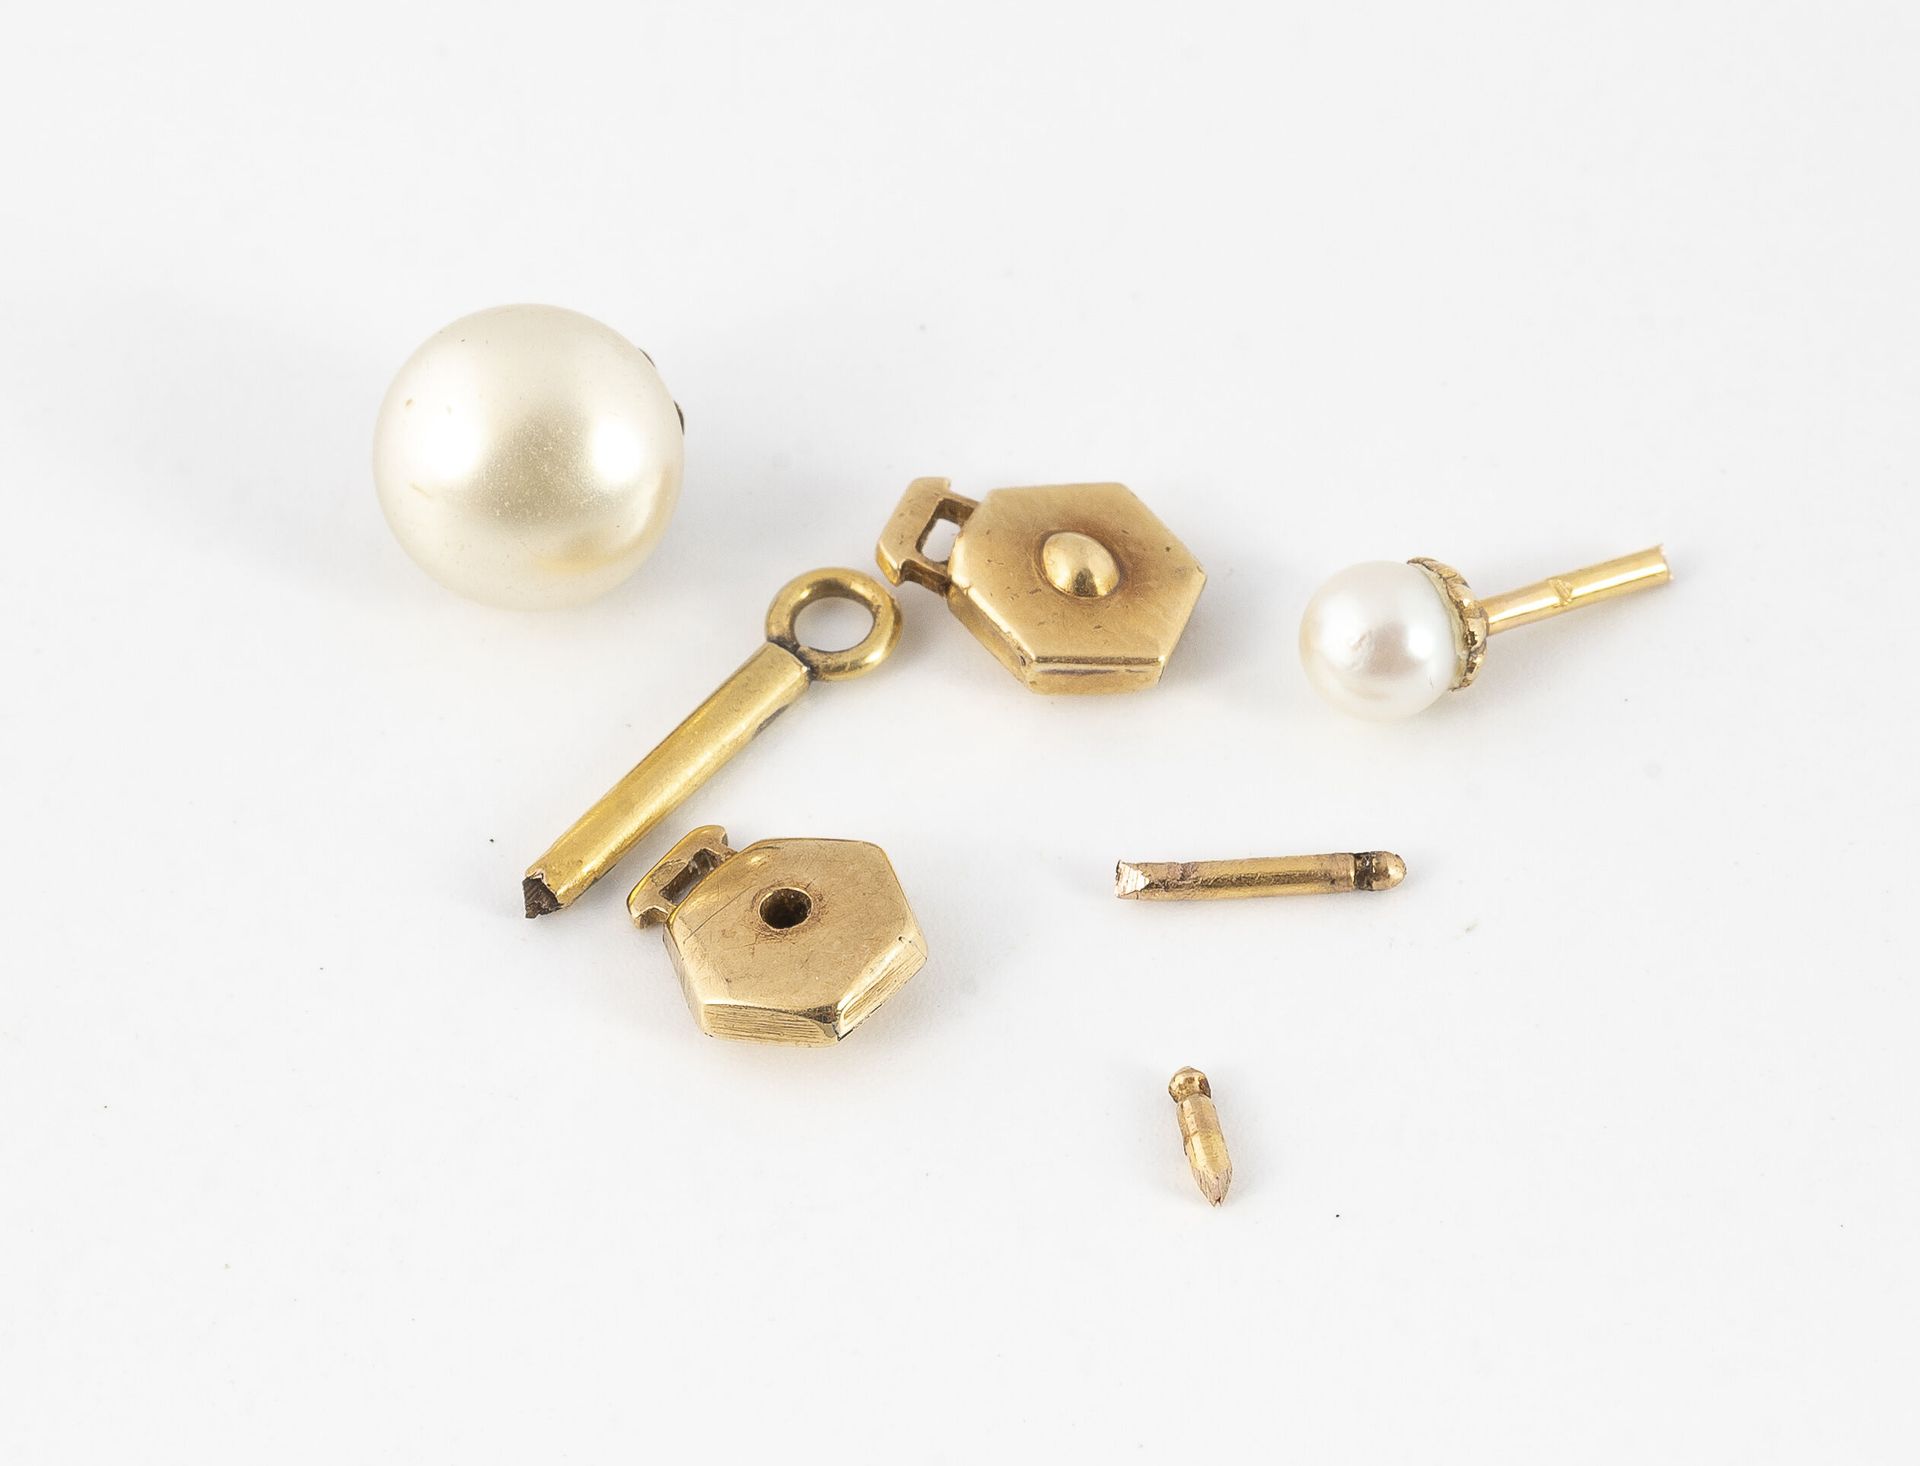 Null 一套两个黄金(750)螺柱，配以白色养殖珍珠和一个发条钥匙。

总毛重：2.7克。

附有一个意外的鎏金金属搭扣。